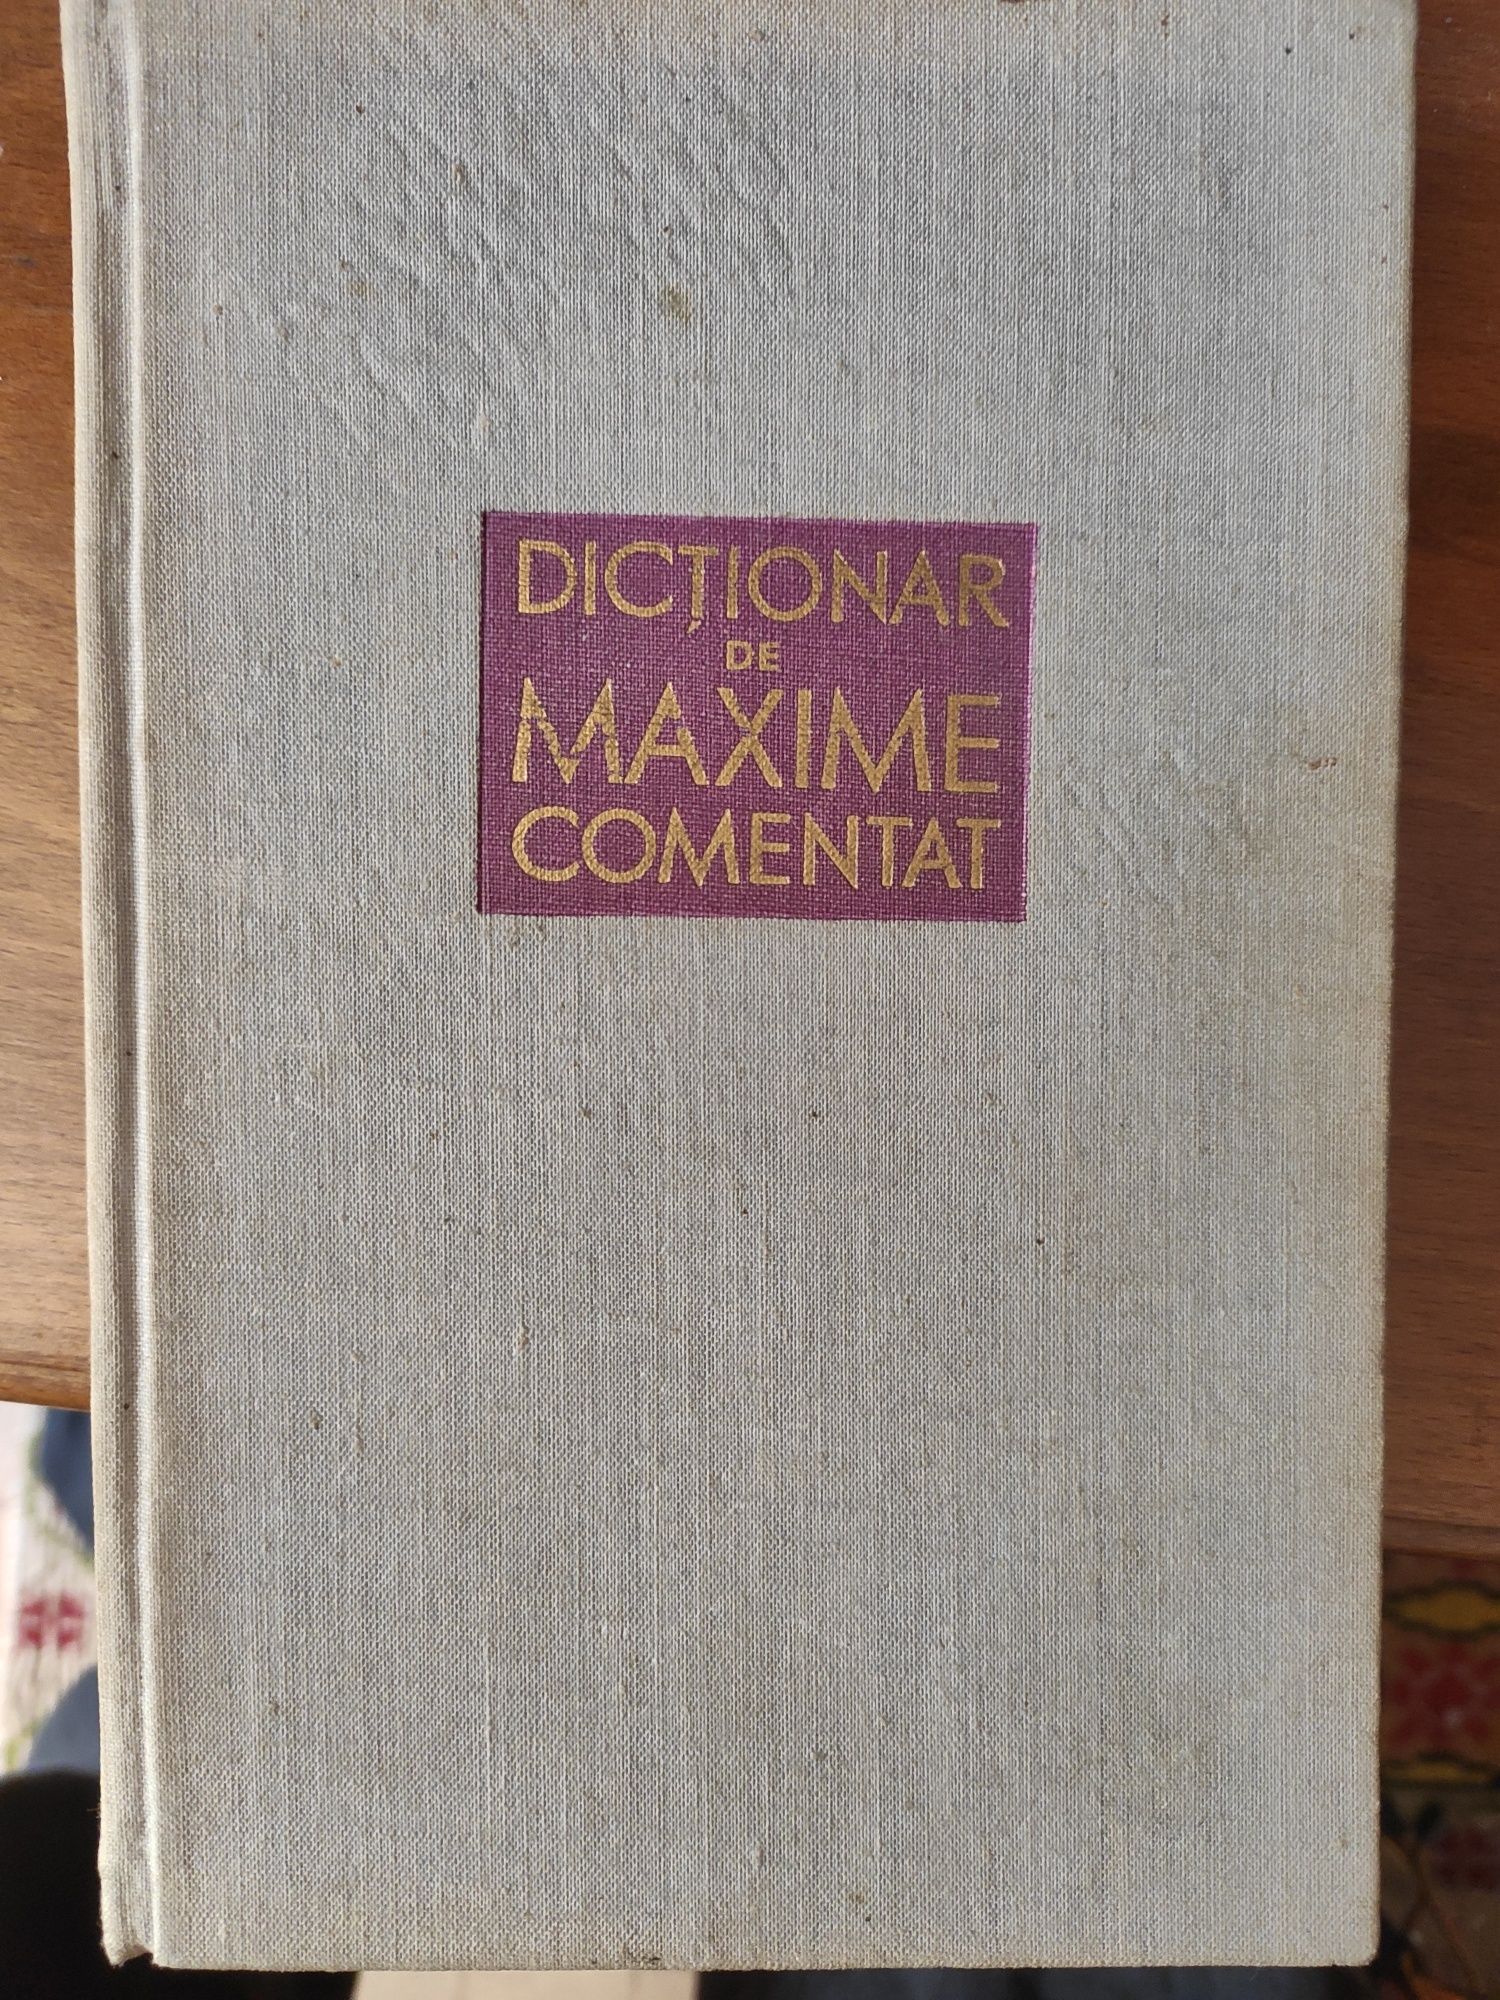 Carte veche anul 1962 Dictionar de maxime comentat